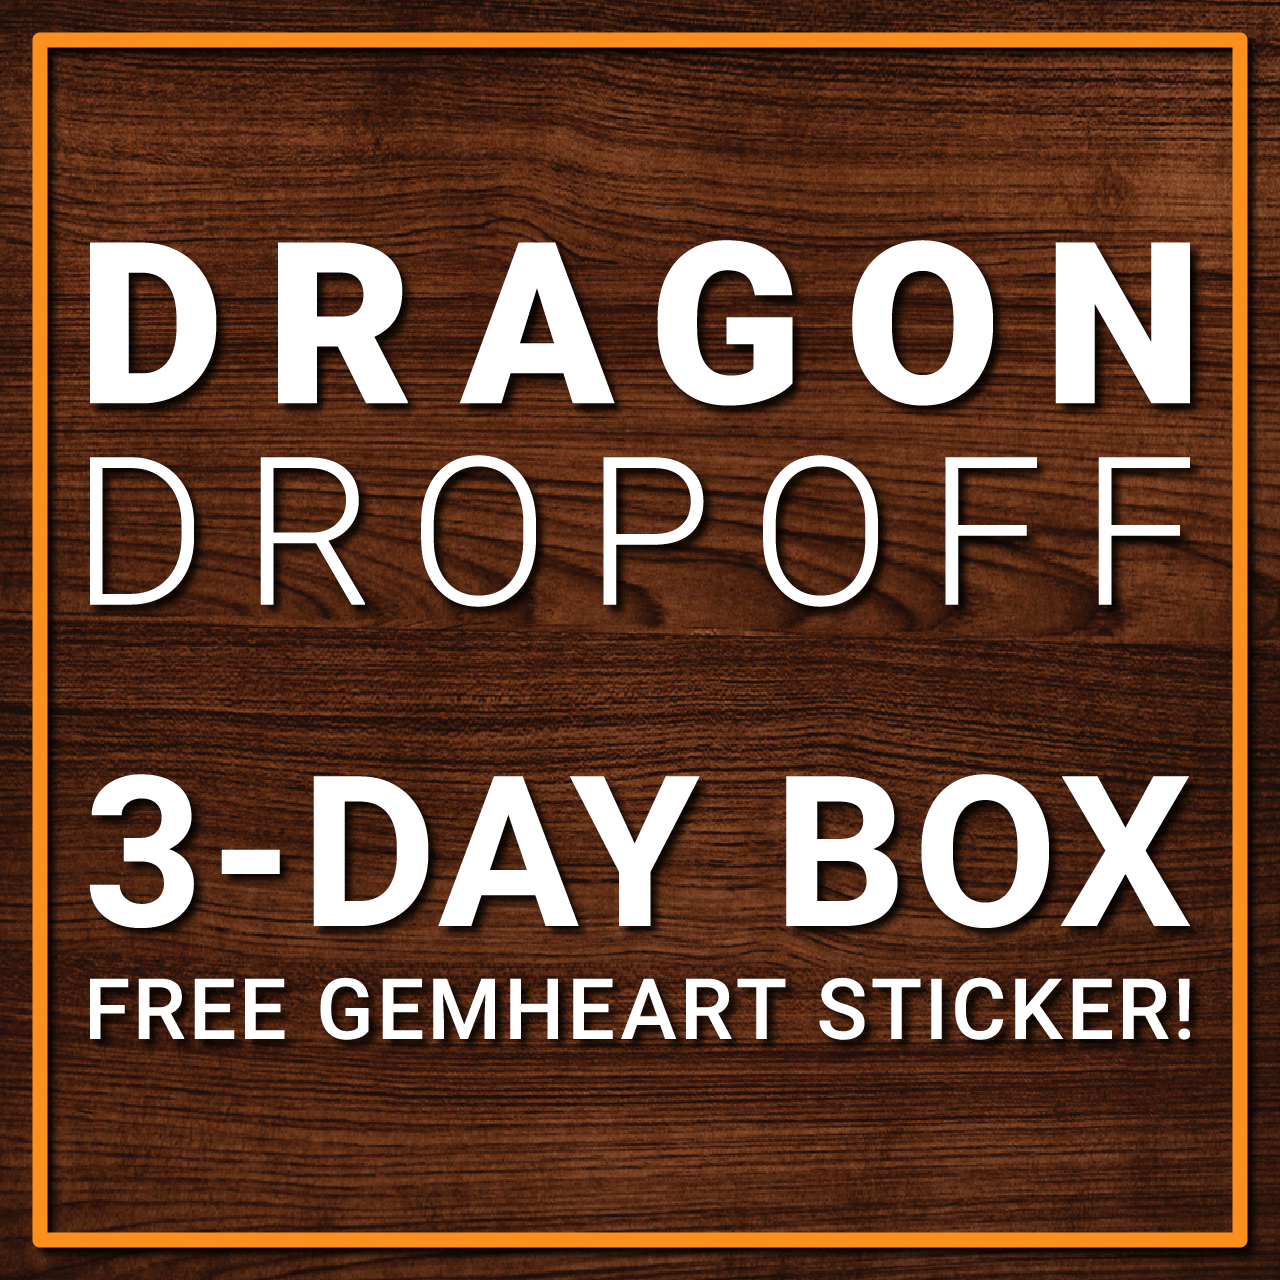 dragon woodshop dragon dropoff storage service for dragonsteel con brandon sanderson 2024